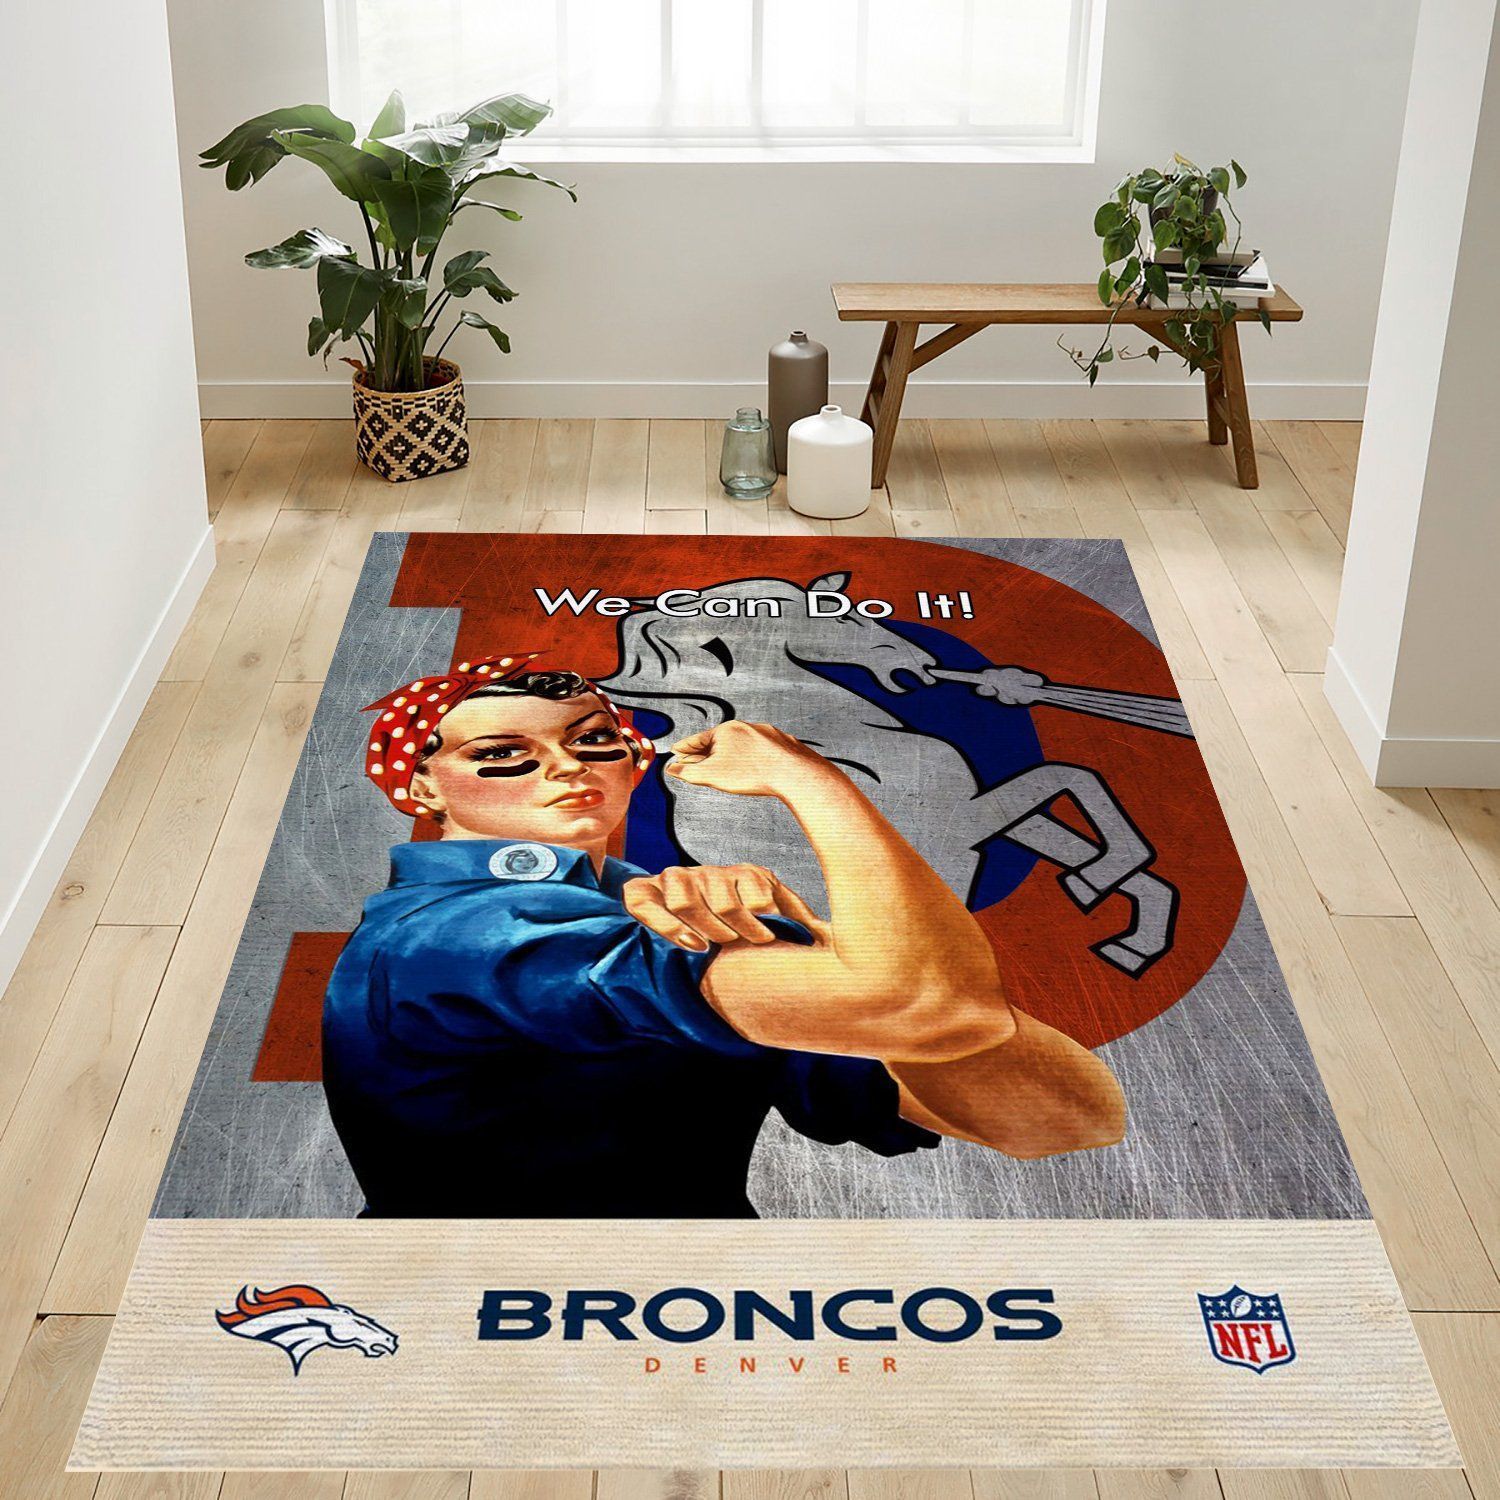 Denver Broncos Nfl Logo Area Rug For Gift Living Room Rug US Gift Decor - Indoor Outdoor Rugs